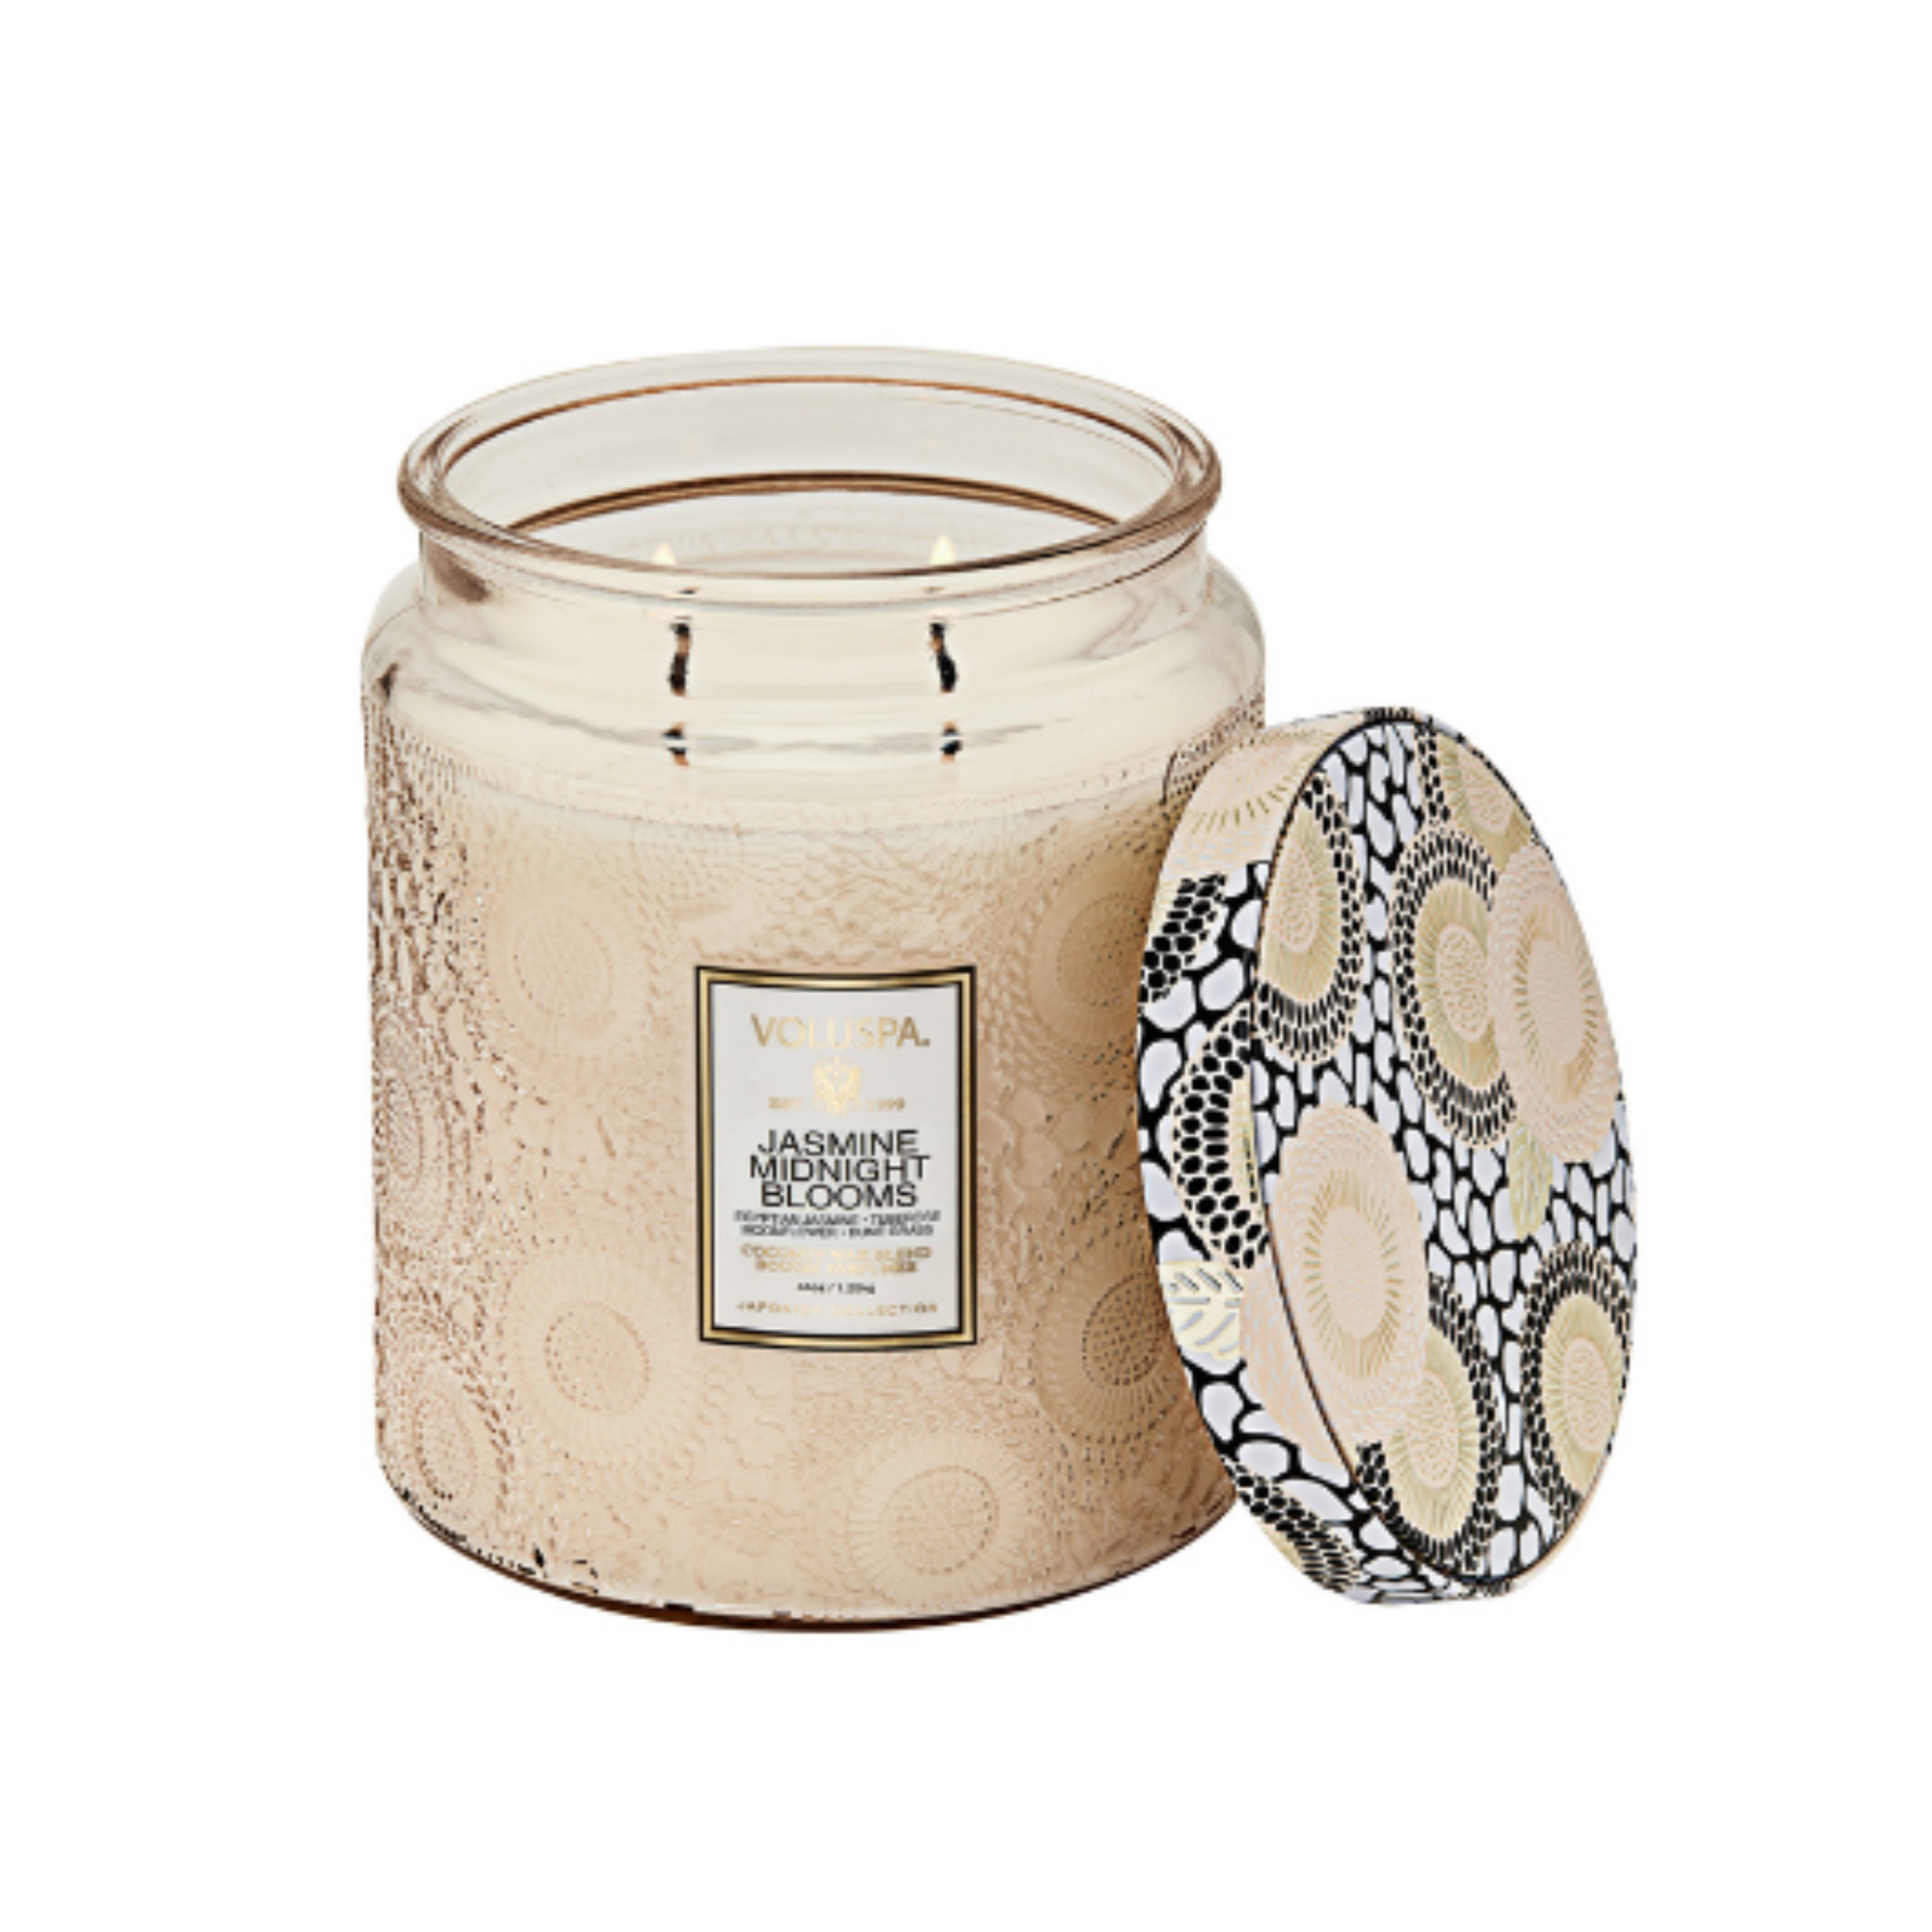 Jasmine Midnight Blooms-Large jar Candle